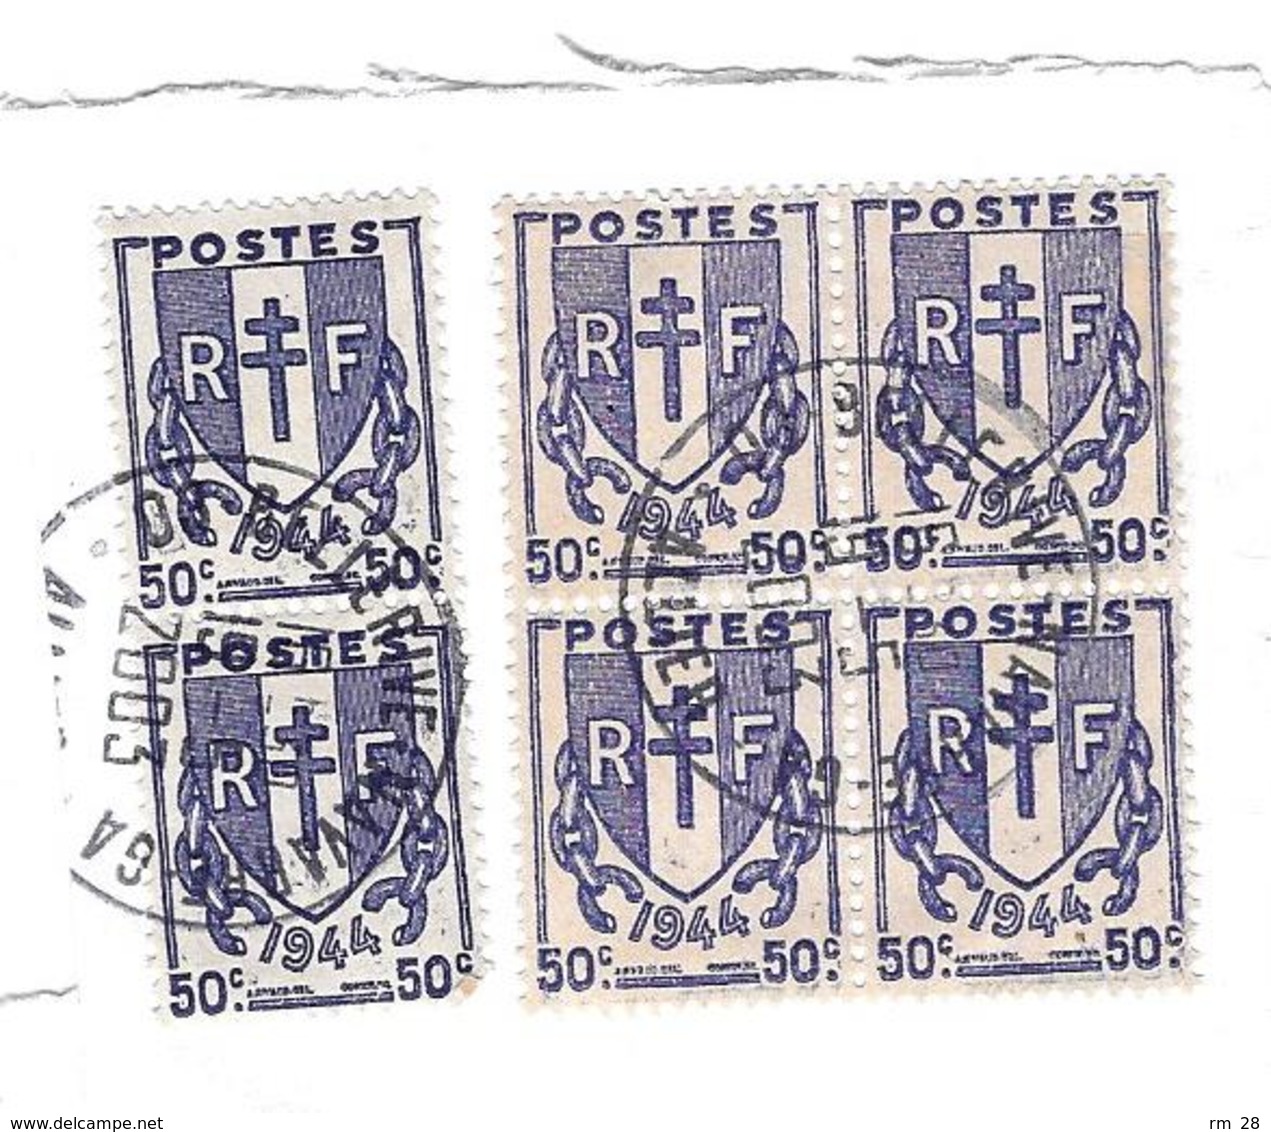 Lot de timbres (souvent en blocs) collés sur lettres et colis (voir les 42 scans) BE